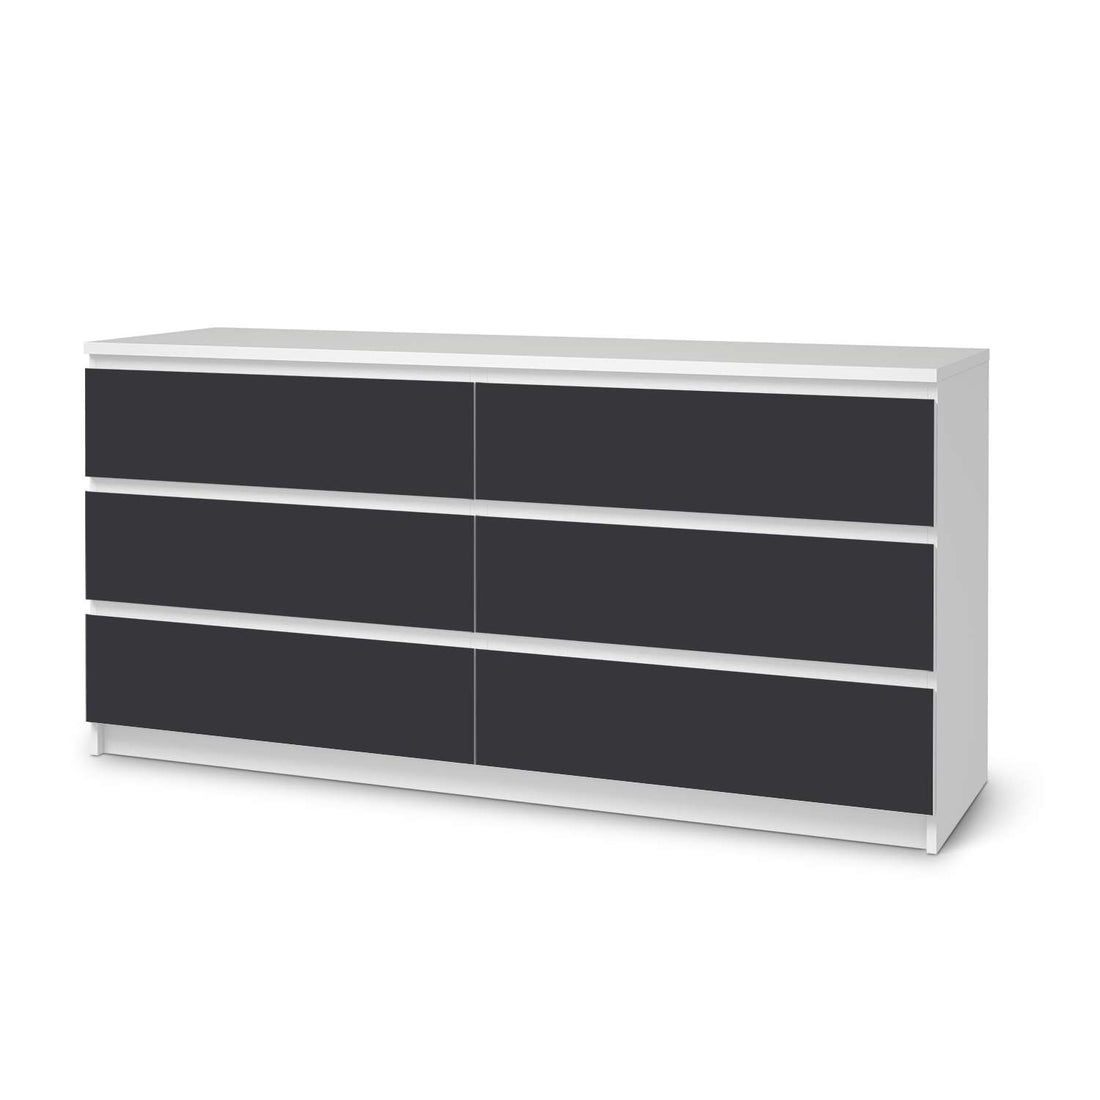 Möbelfolie Grau Dark - IKEA Malm Kommode 6 Schubladen (breit)  - weiss